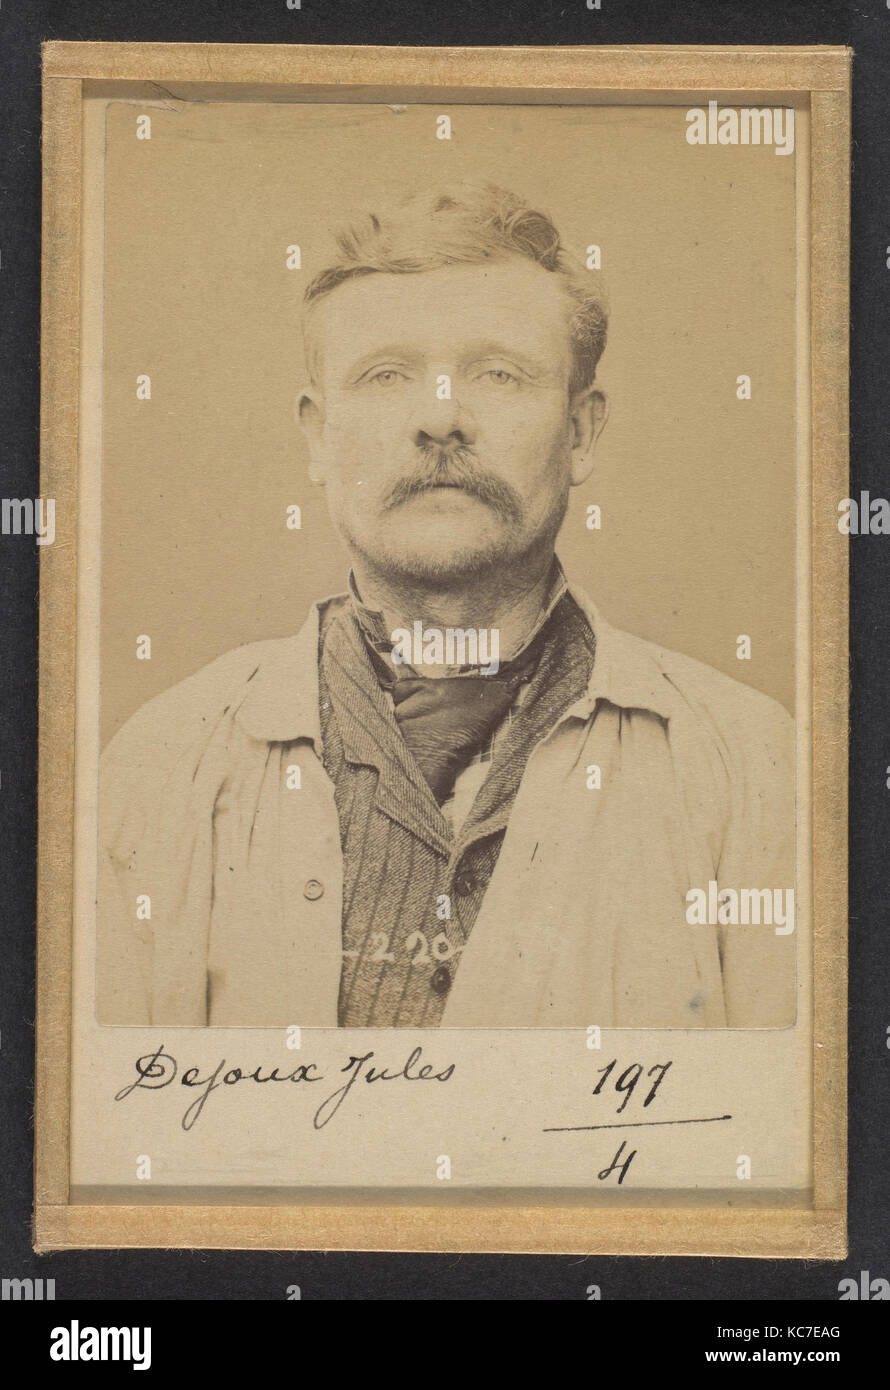 Dejoux. Jules. 46 ans, né Le 16/6/48 à-La Châtre (Indre). Maçon. Délit de presse. 2/7/94., Alphonse Bertillon, 1894 Stockfoto